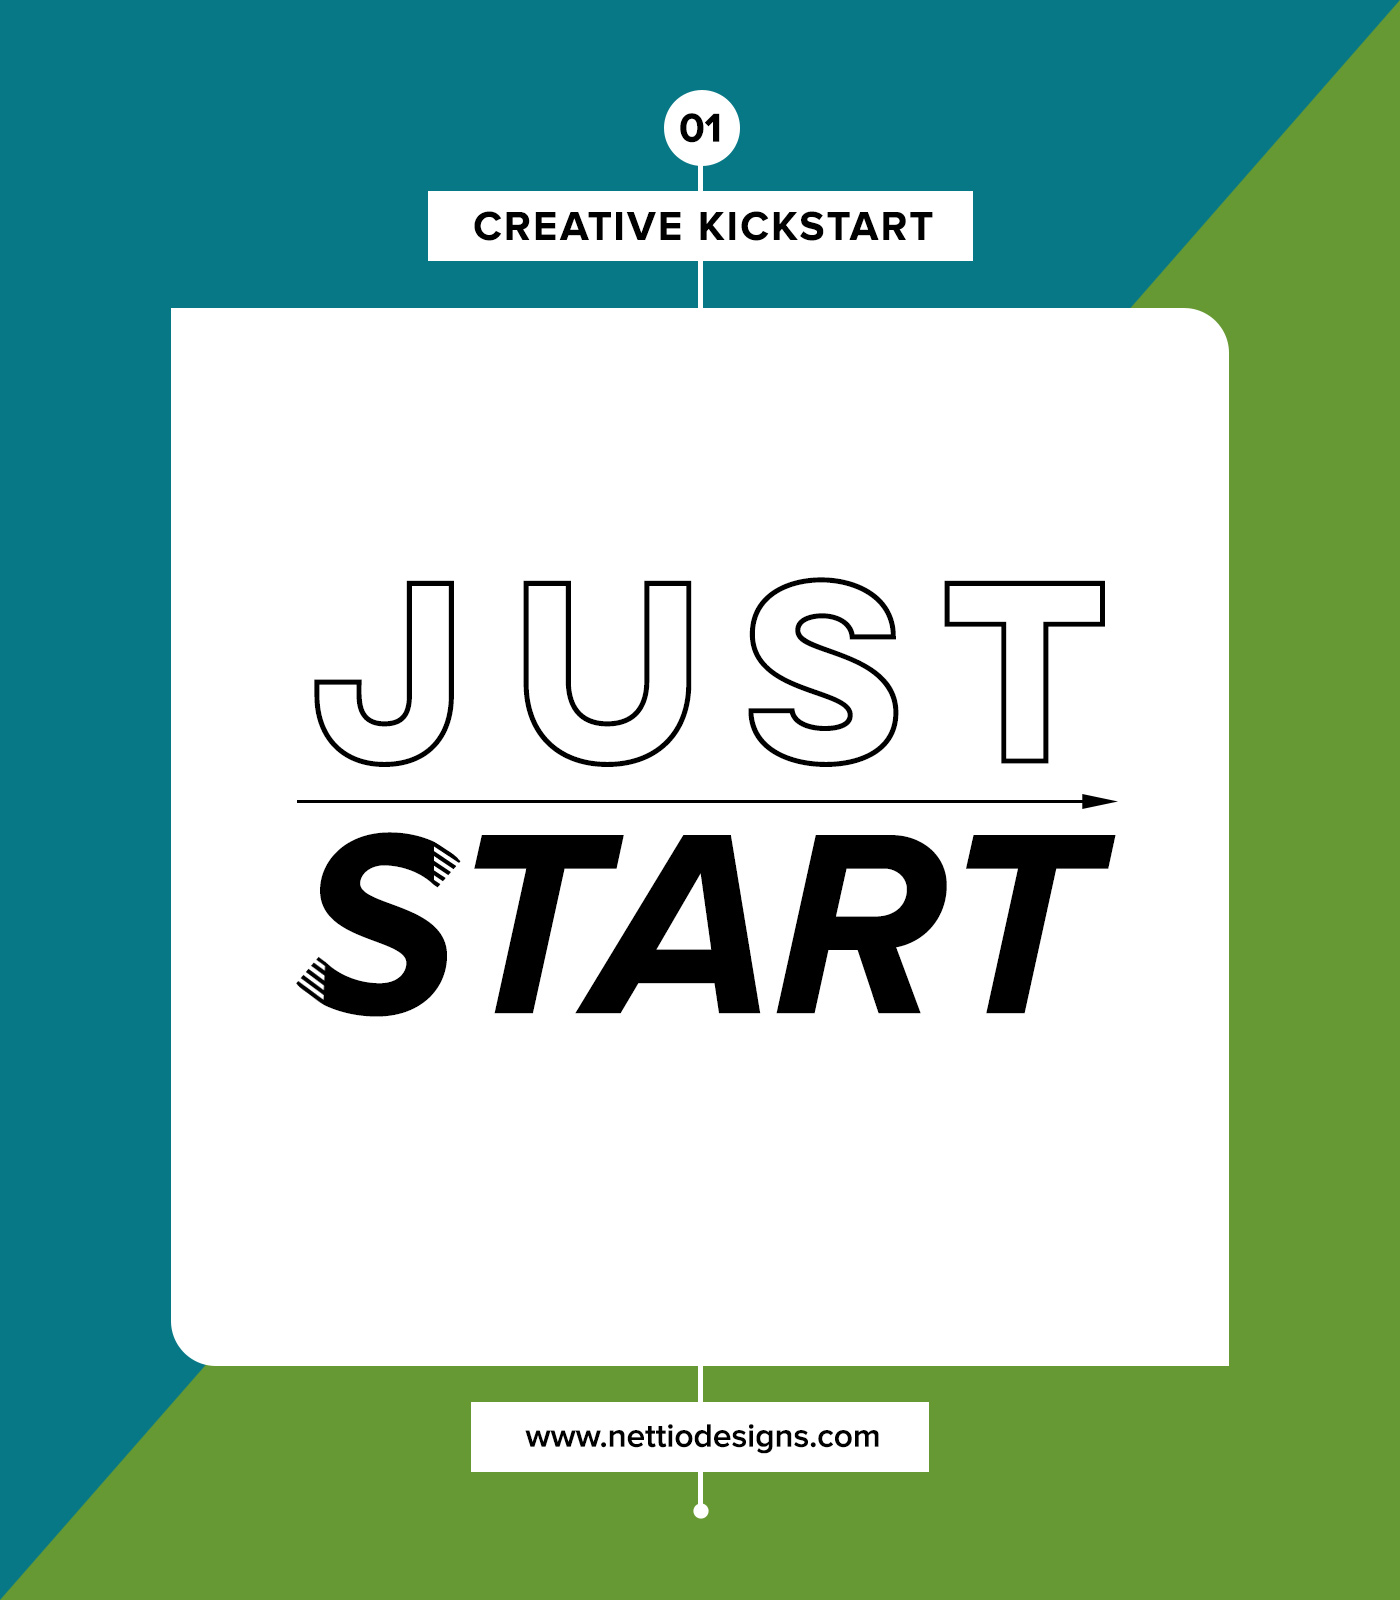 nettio_CreativeKickstart-01-JustStart-vert